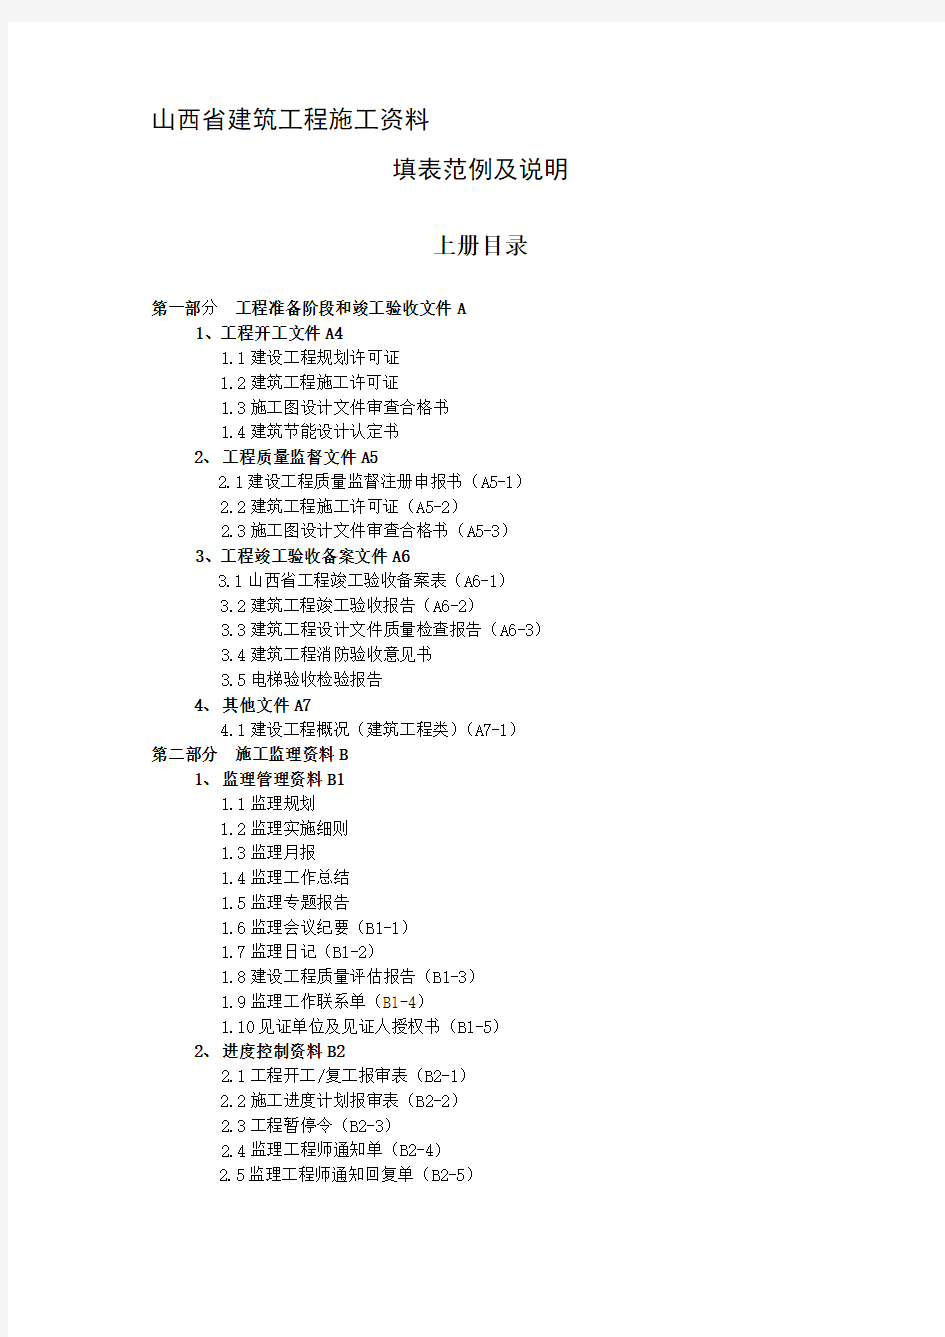 山西省建筑工程施工施工资料填表范例及说明(上)